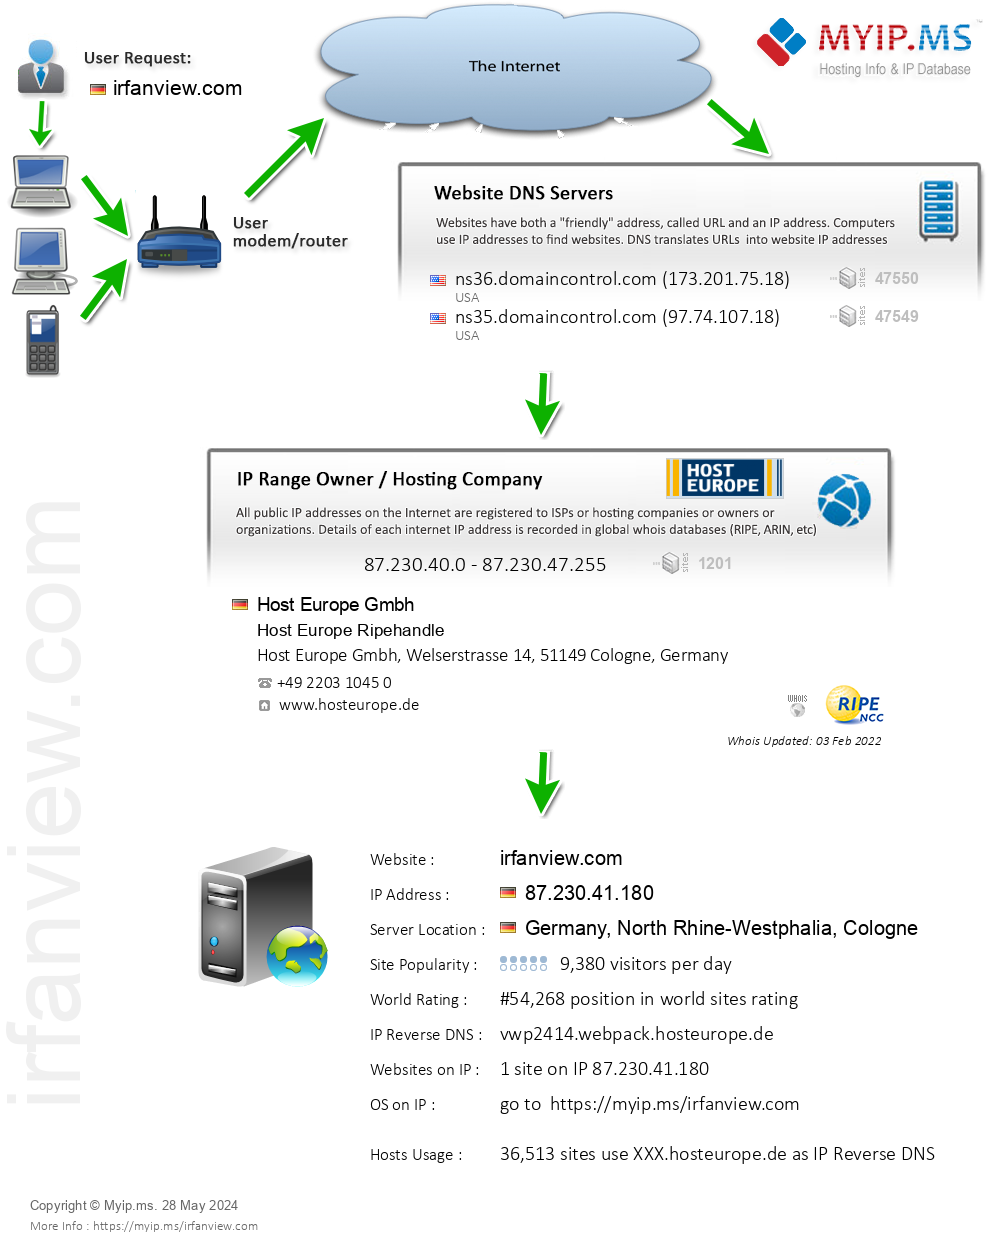 Irfanview.com - Website Hosting Visual IP Diagram